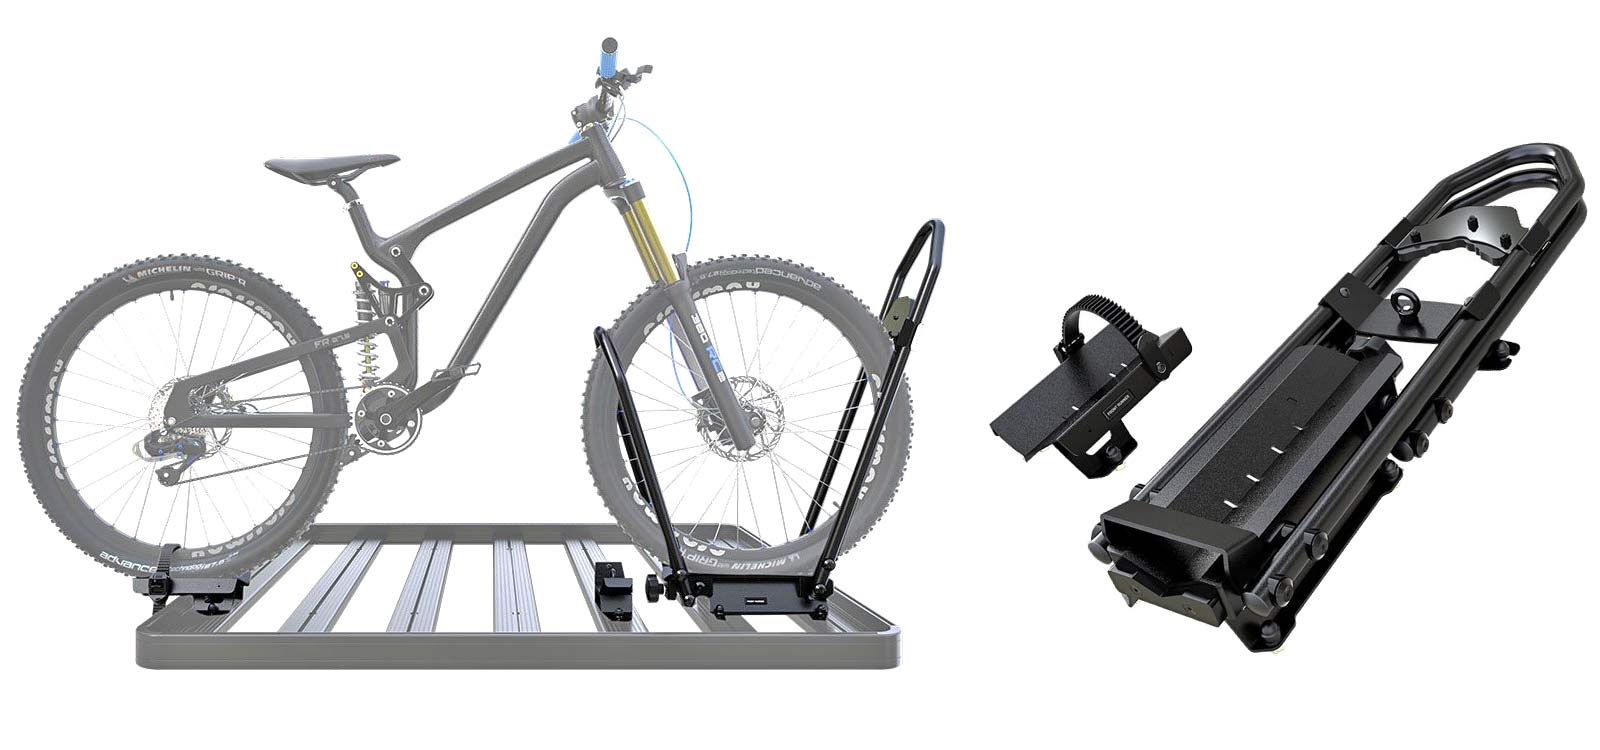 Front Runner Pro Bike Carrier, wheels-on bike roof rack, details